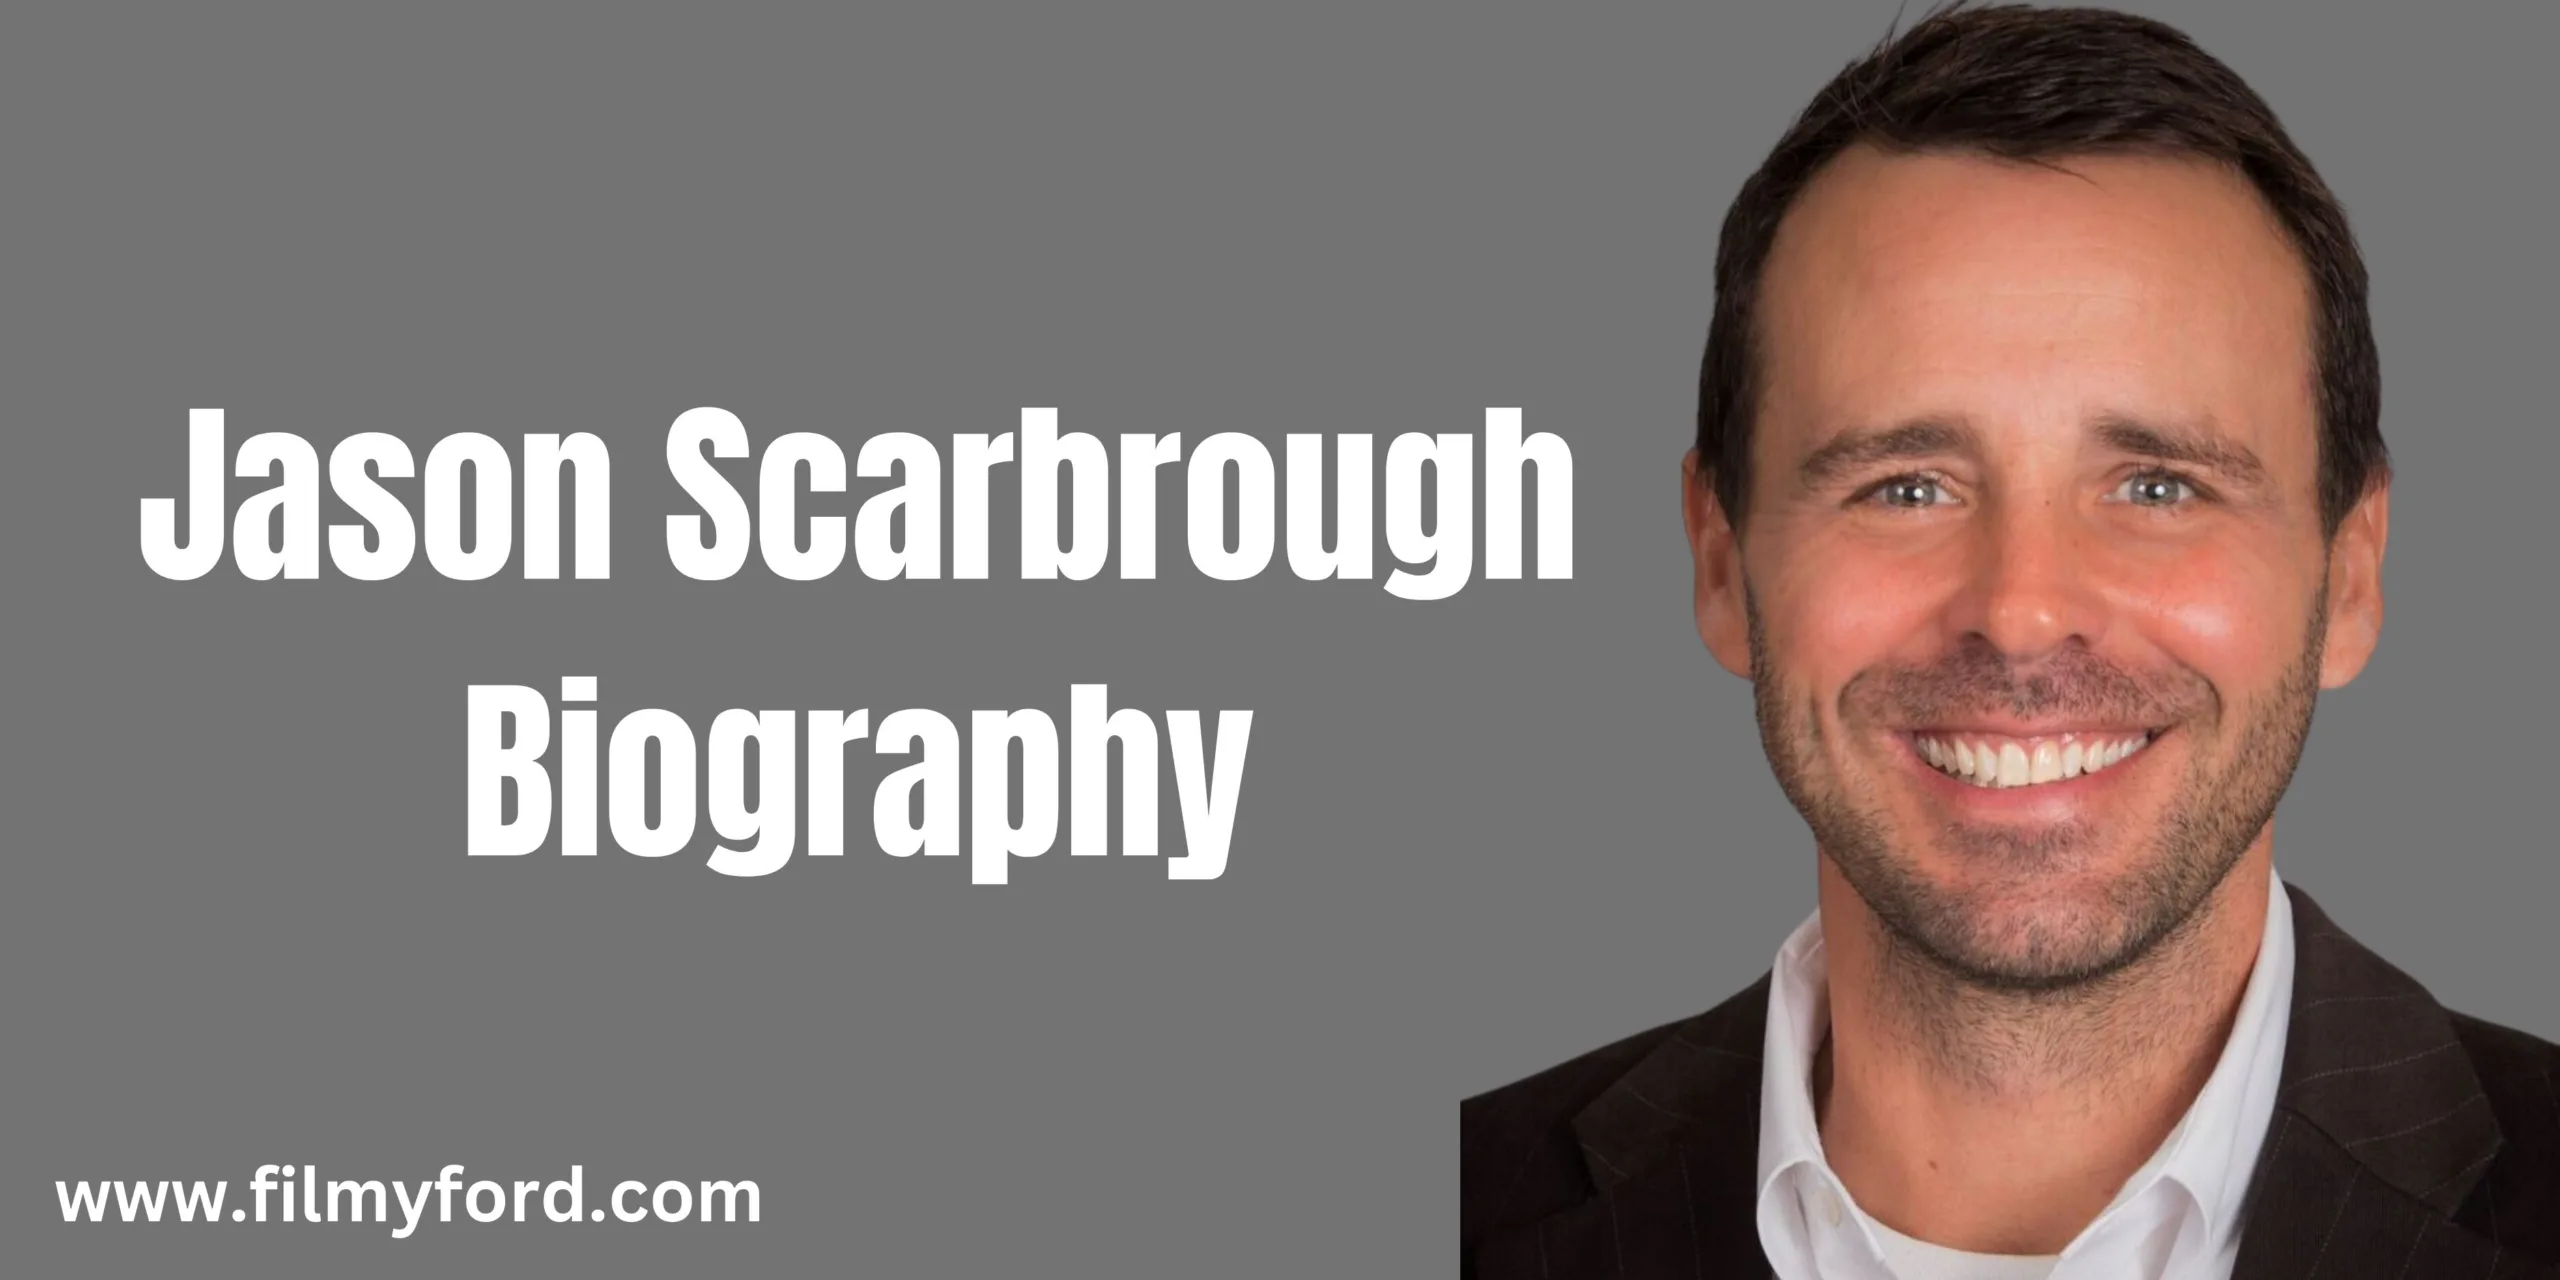 Jason Scarbrough Biography